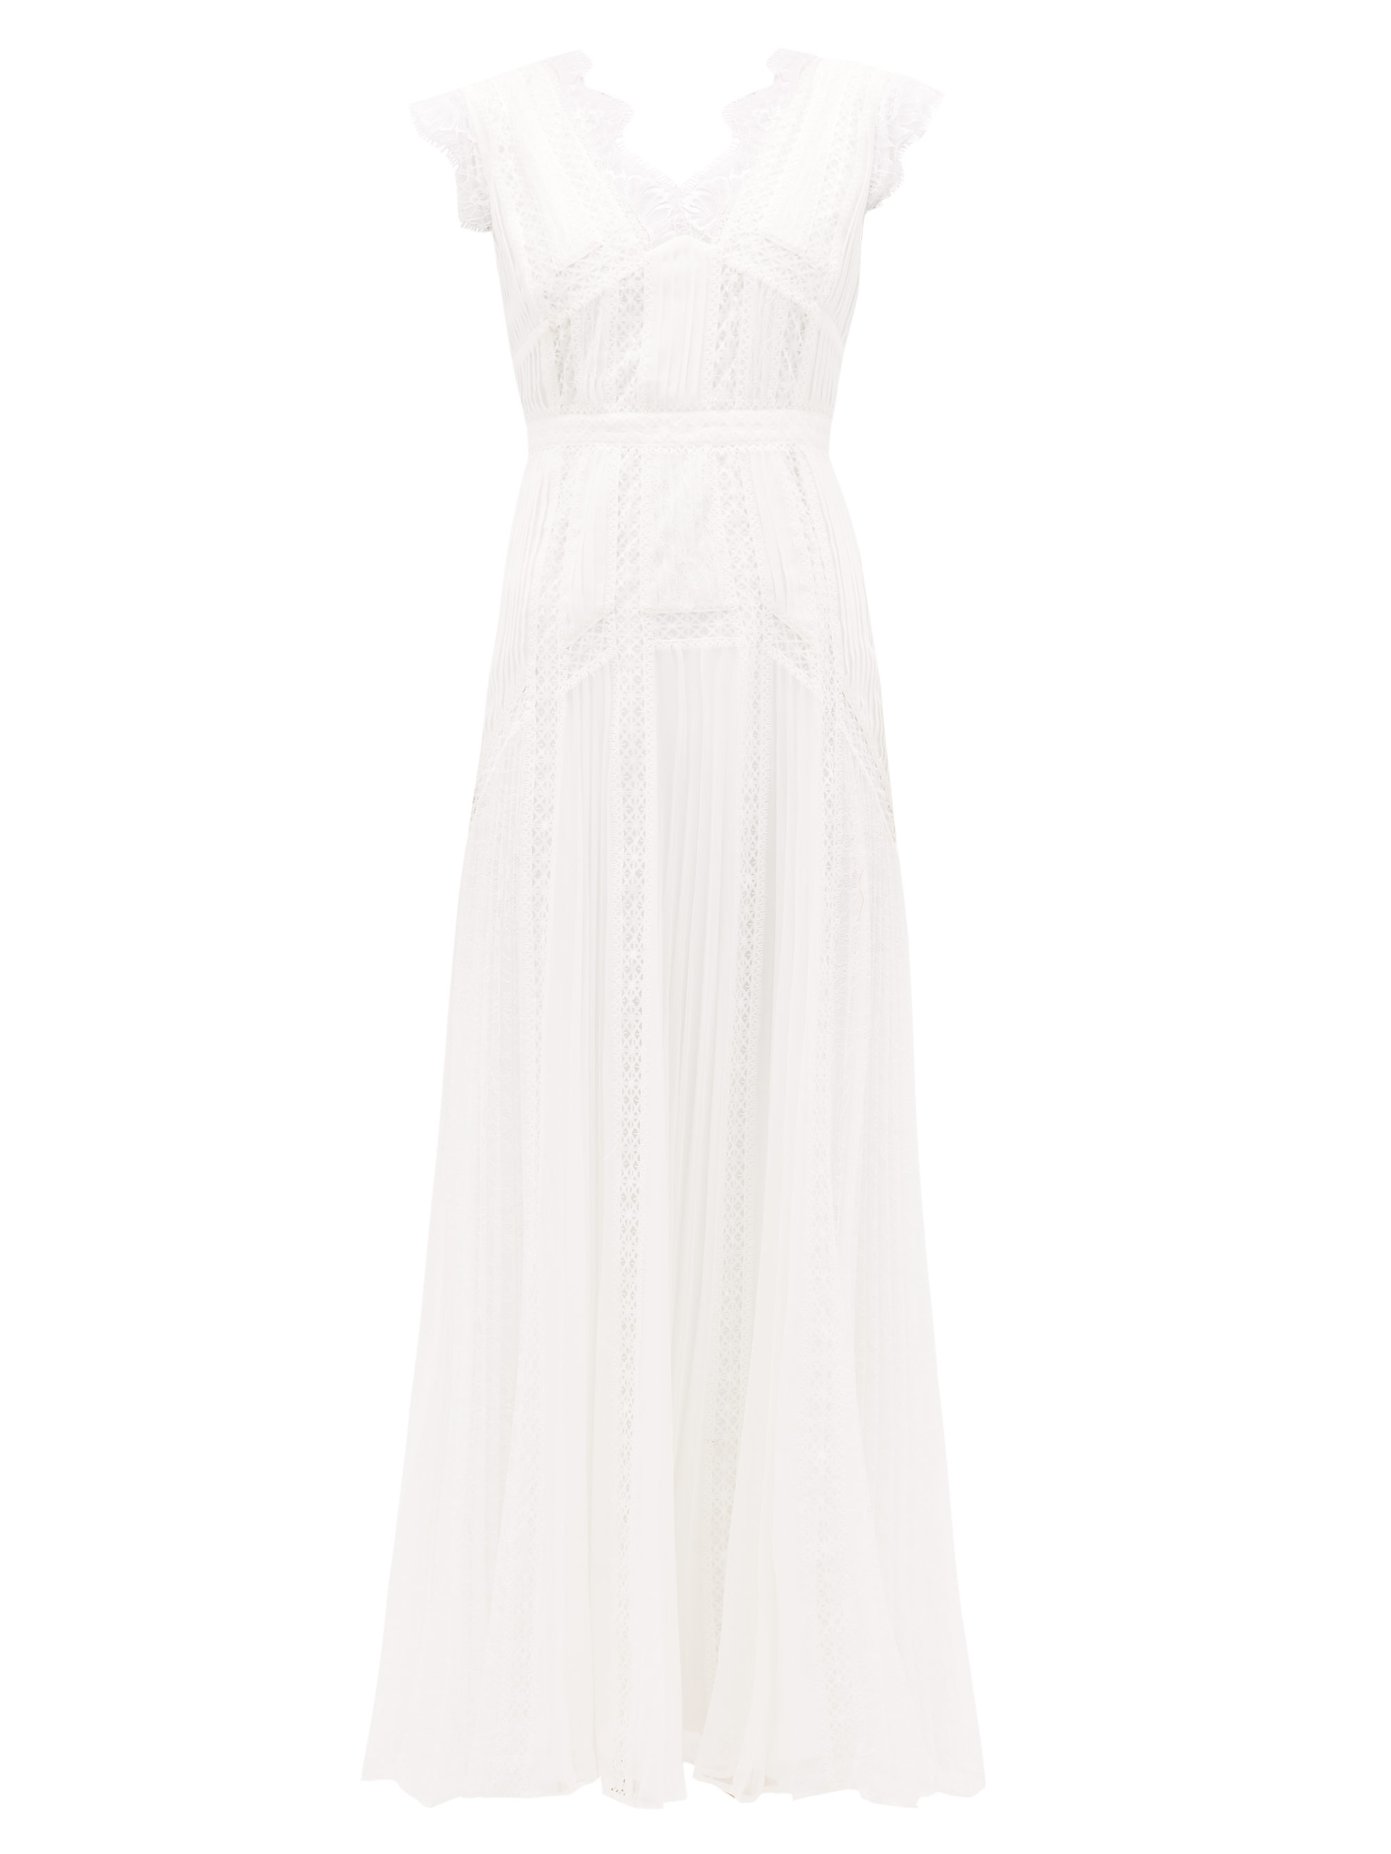 white pleated chiffon dress